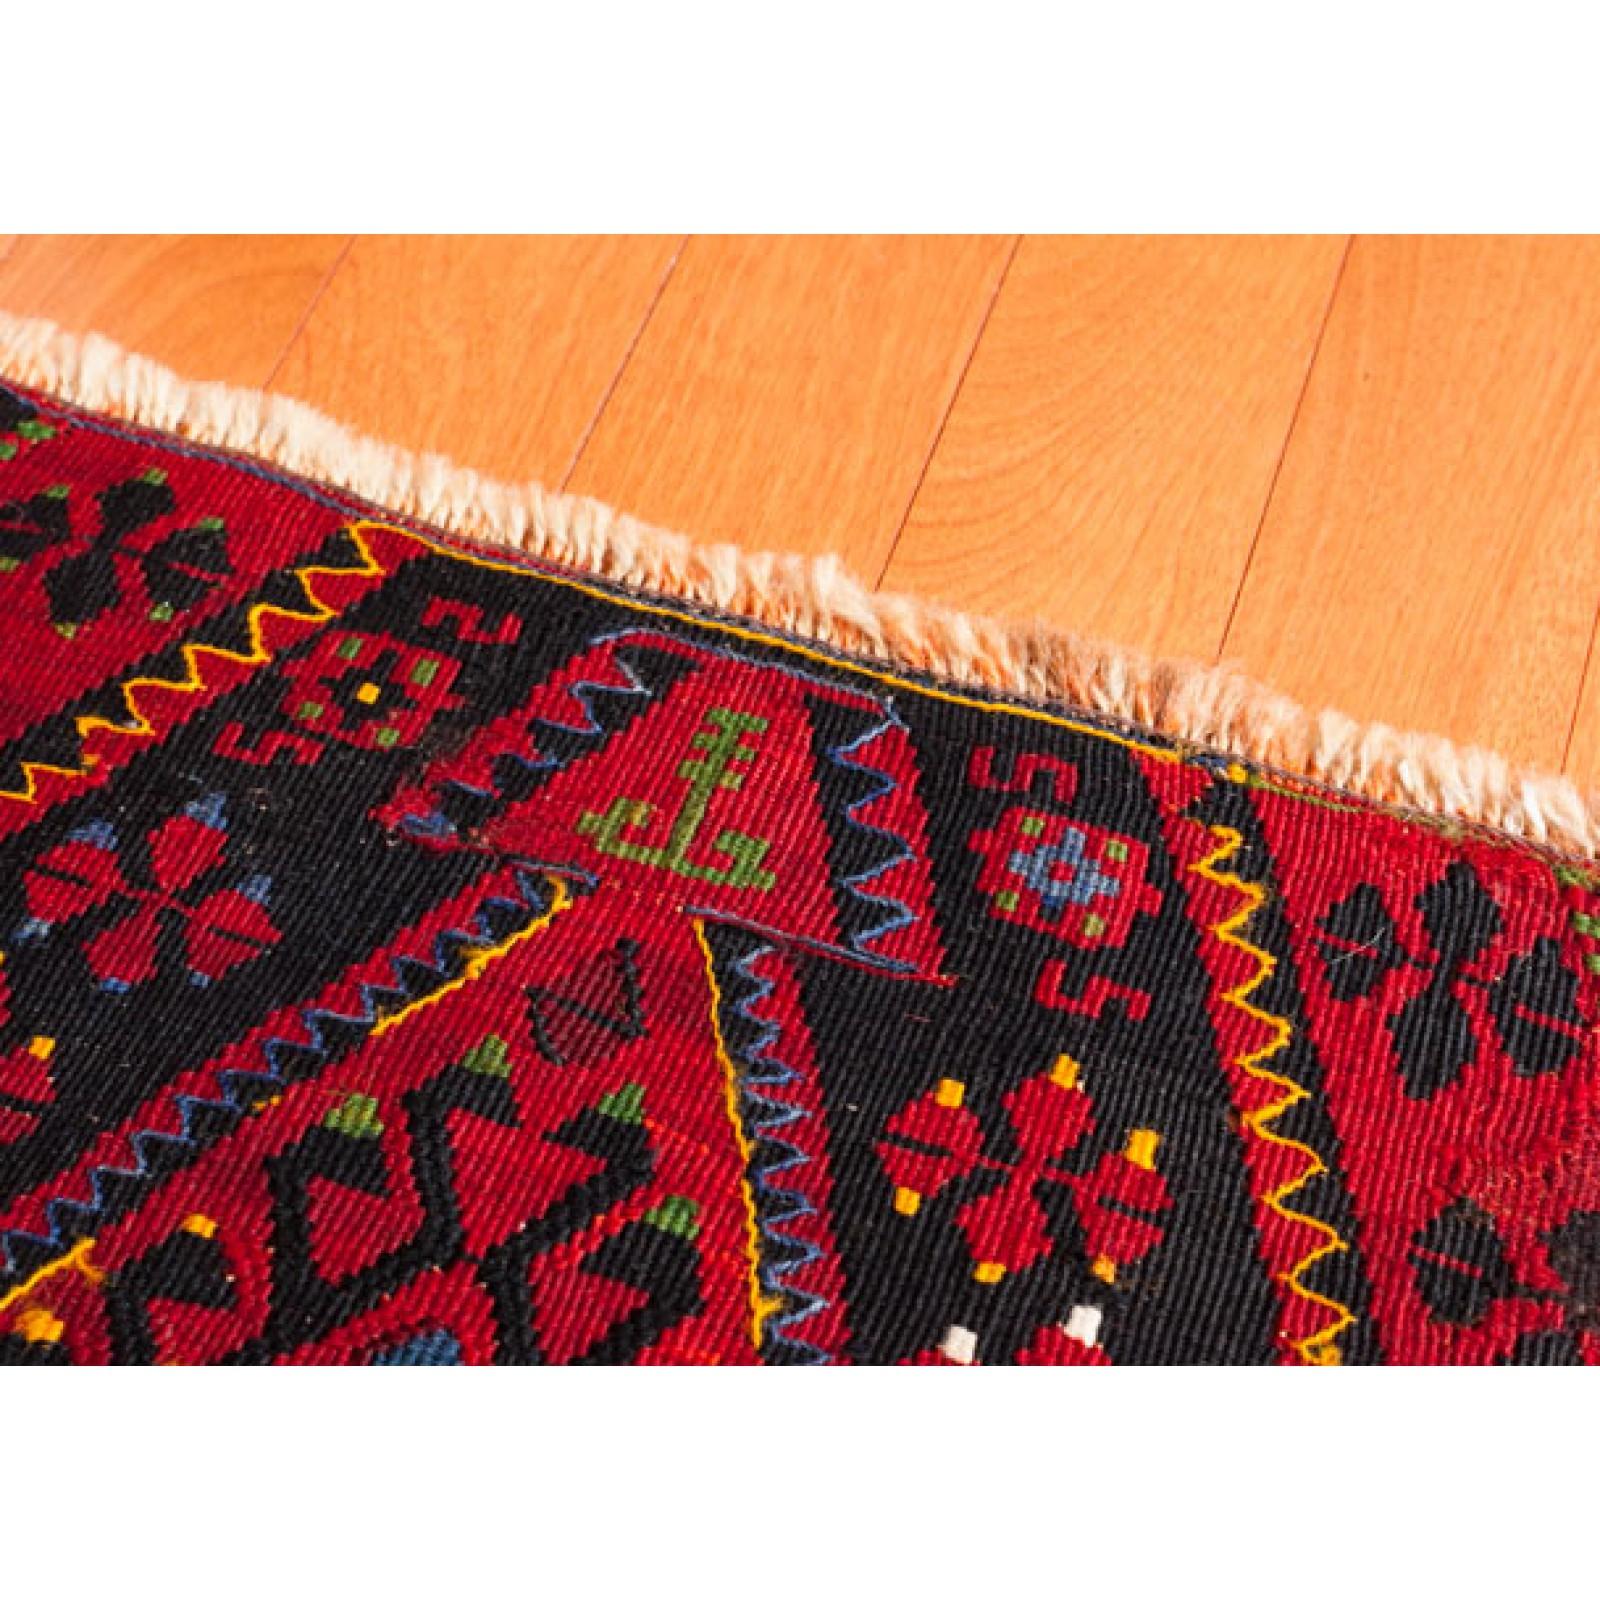 Il s'agit d'un petit kilim ancien de la région de Malatya, de l'est de l'Anatolie, dont la composition des couleurs est rare et magnifique.

Ce kilim antique de grande collection présente de merveilleuses couleurs et textures particulières, typiques